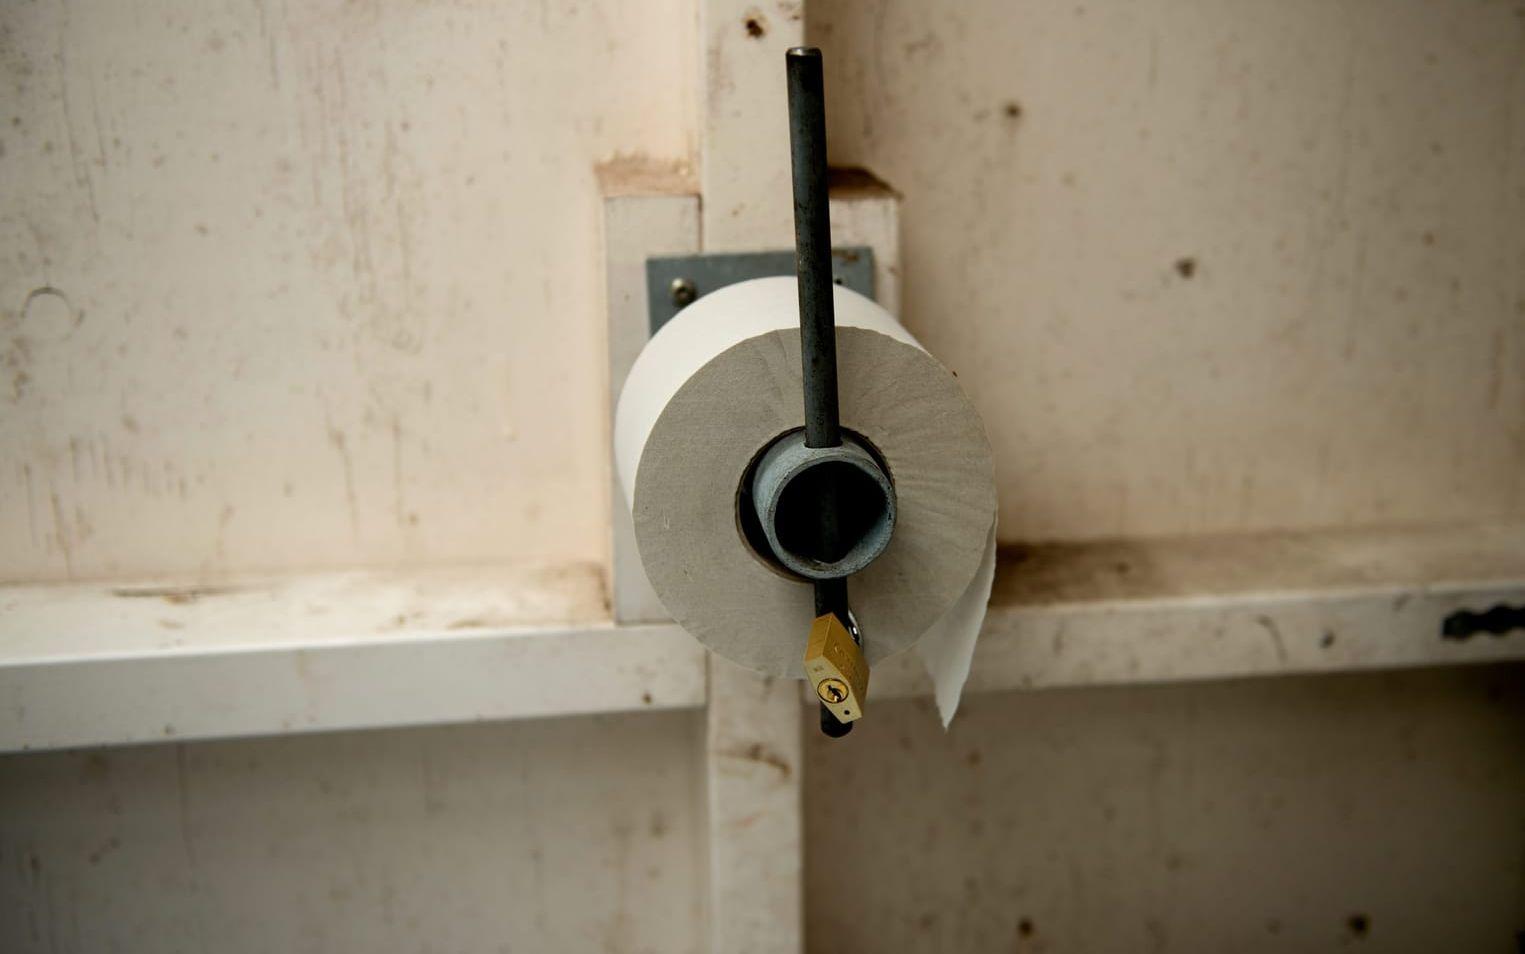 Toapappershållaren är försedd med lås, som tjuvarna har slagit sönder för att komma åt dasspappret. Bild: Lina Salomonsson